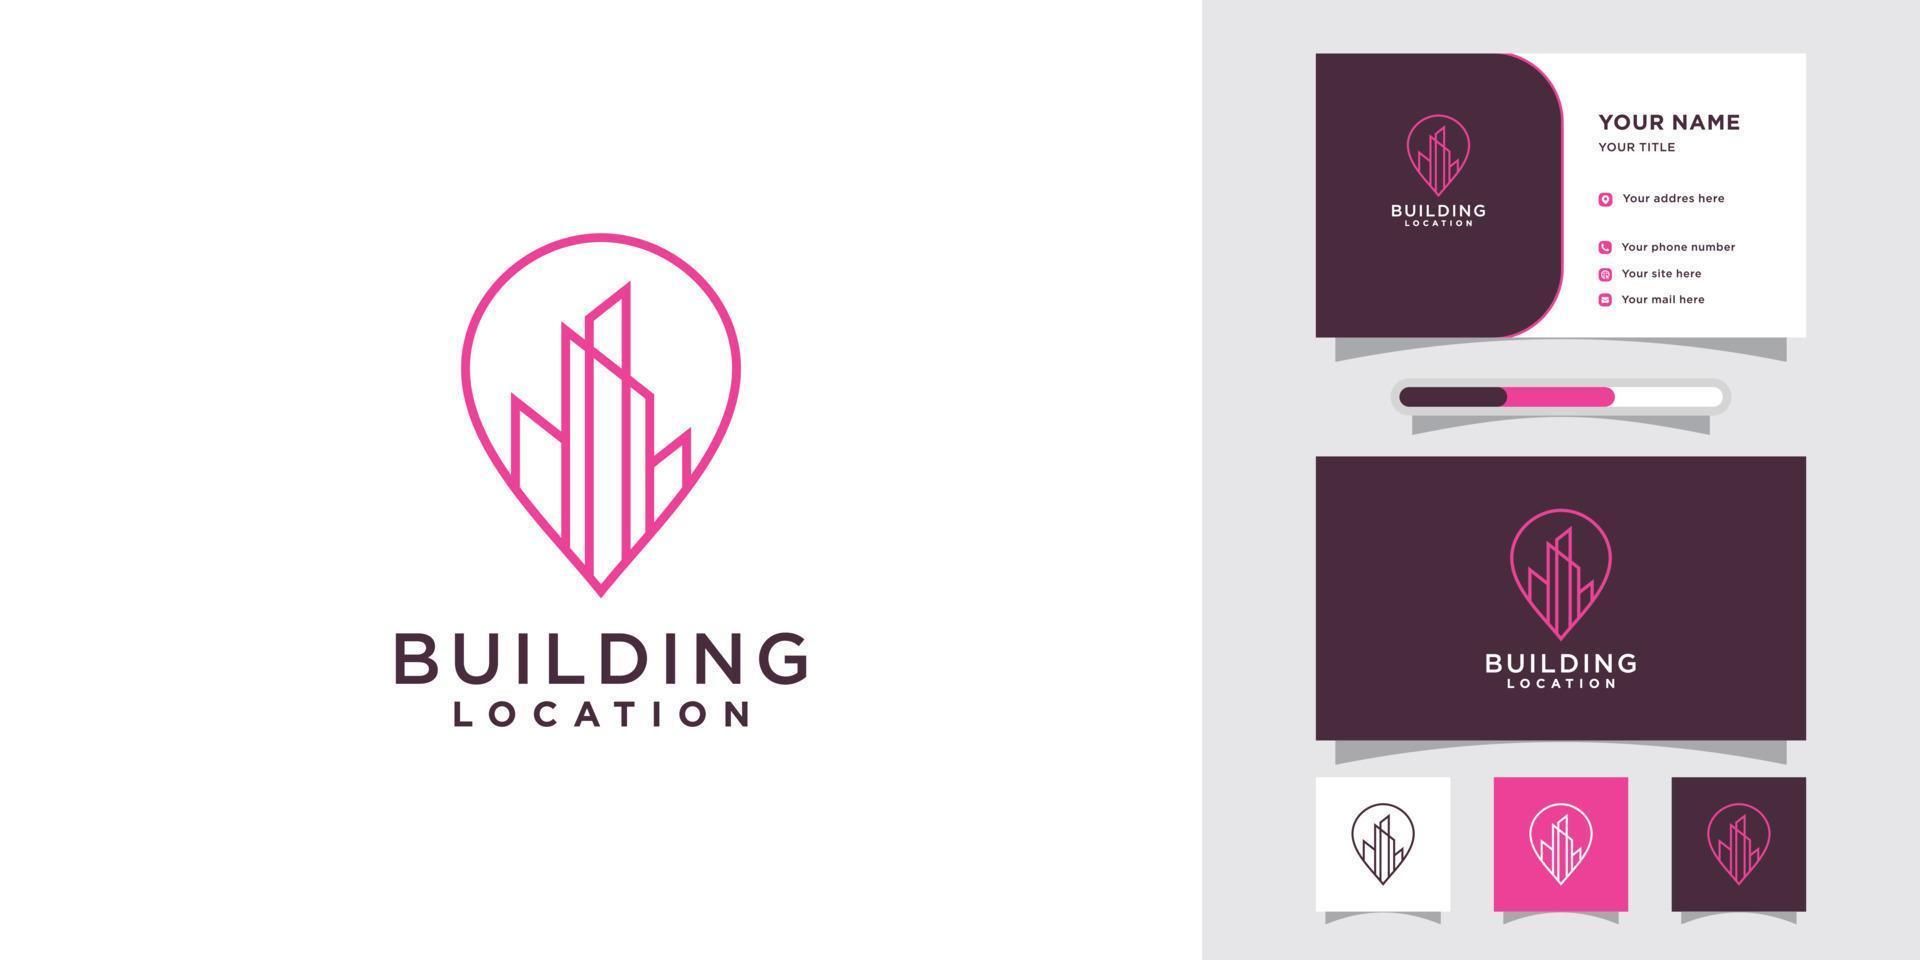 Gebäude-Standort-Logo mit Pin-Point und Visitenkarten-Design Premium-Vektor vektor